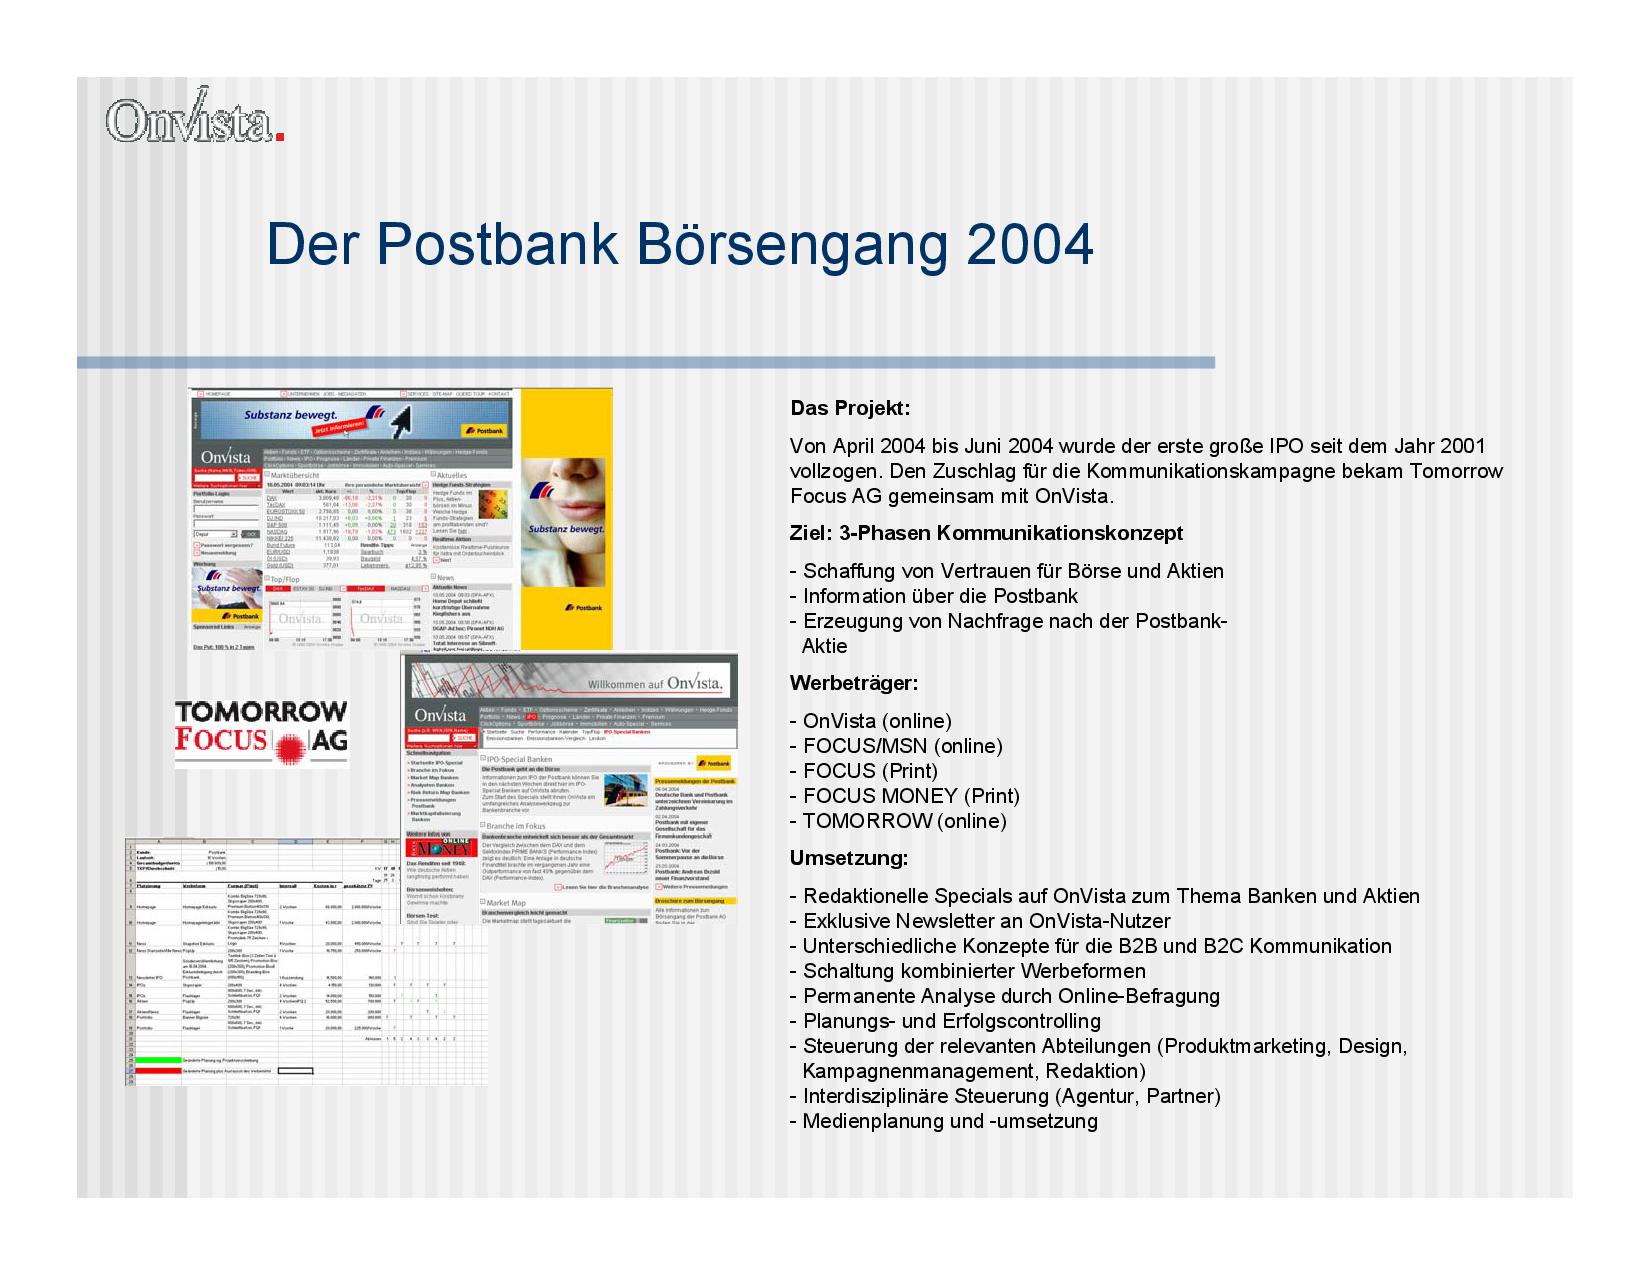 Eine Präsentationsseite vom Postbank Börsengang 2004